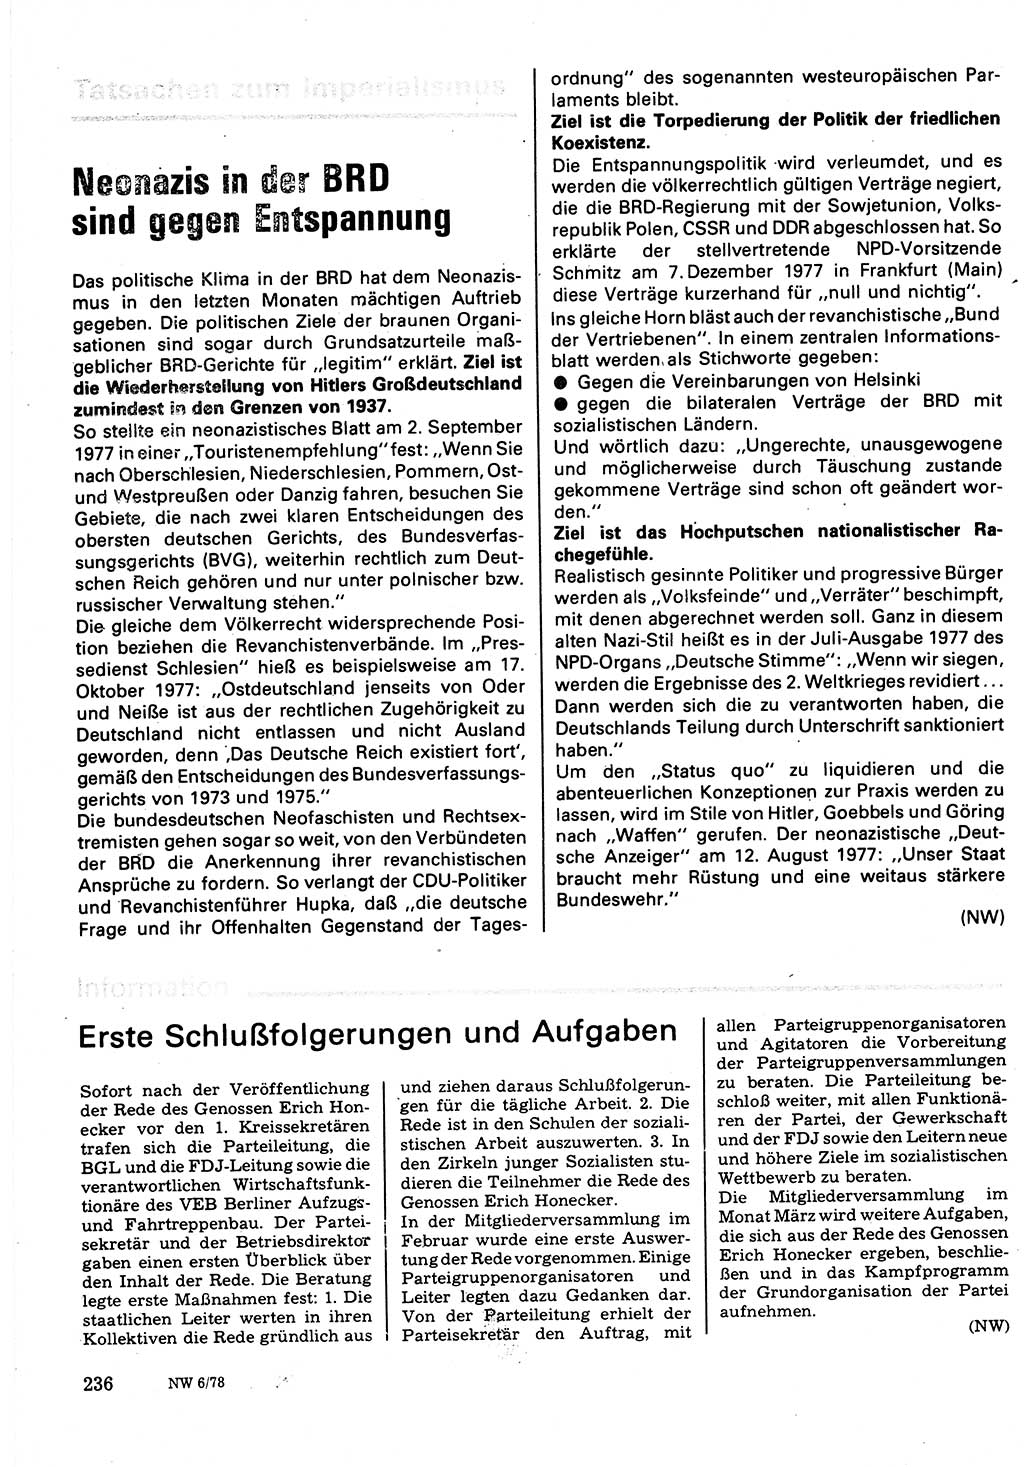 Neuer Weg (NW), Organ des Zentralkomitees (ZK) der SED (Sozialistische Einheitspartei Deutschlands) für Fragen des Parteilebens, 33. Jahrgang [Deutsche Demokratische Republik (DDR)] 1978, Seite 236 (NW ZK SED DDR 1978, S. 236)